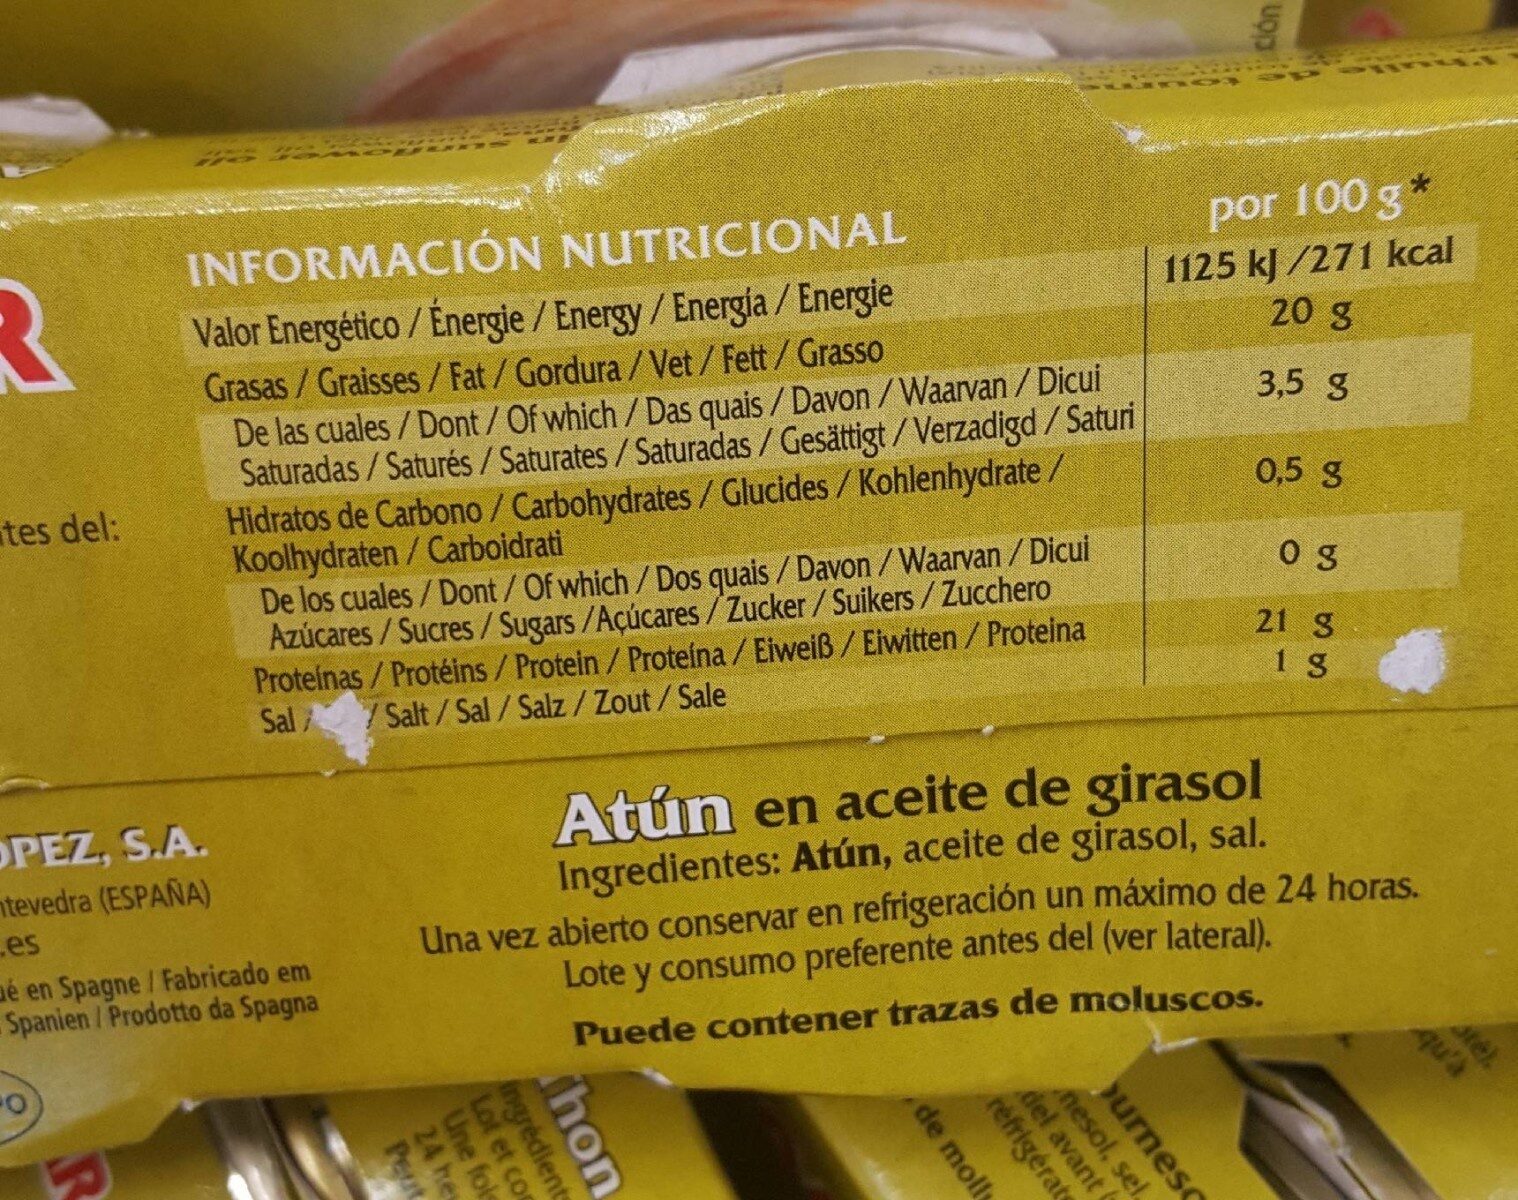 Atún en aceite de girasol - Nutrition facts - fr